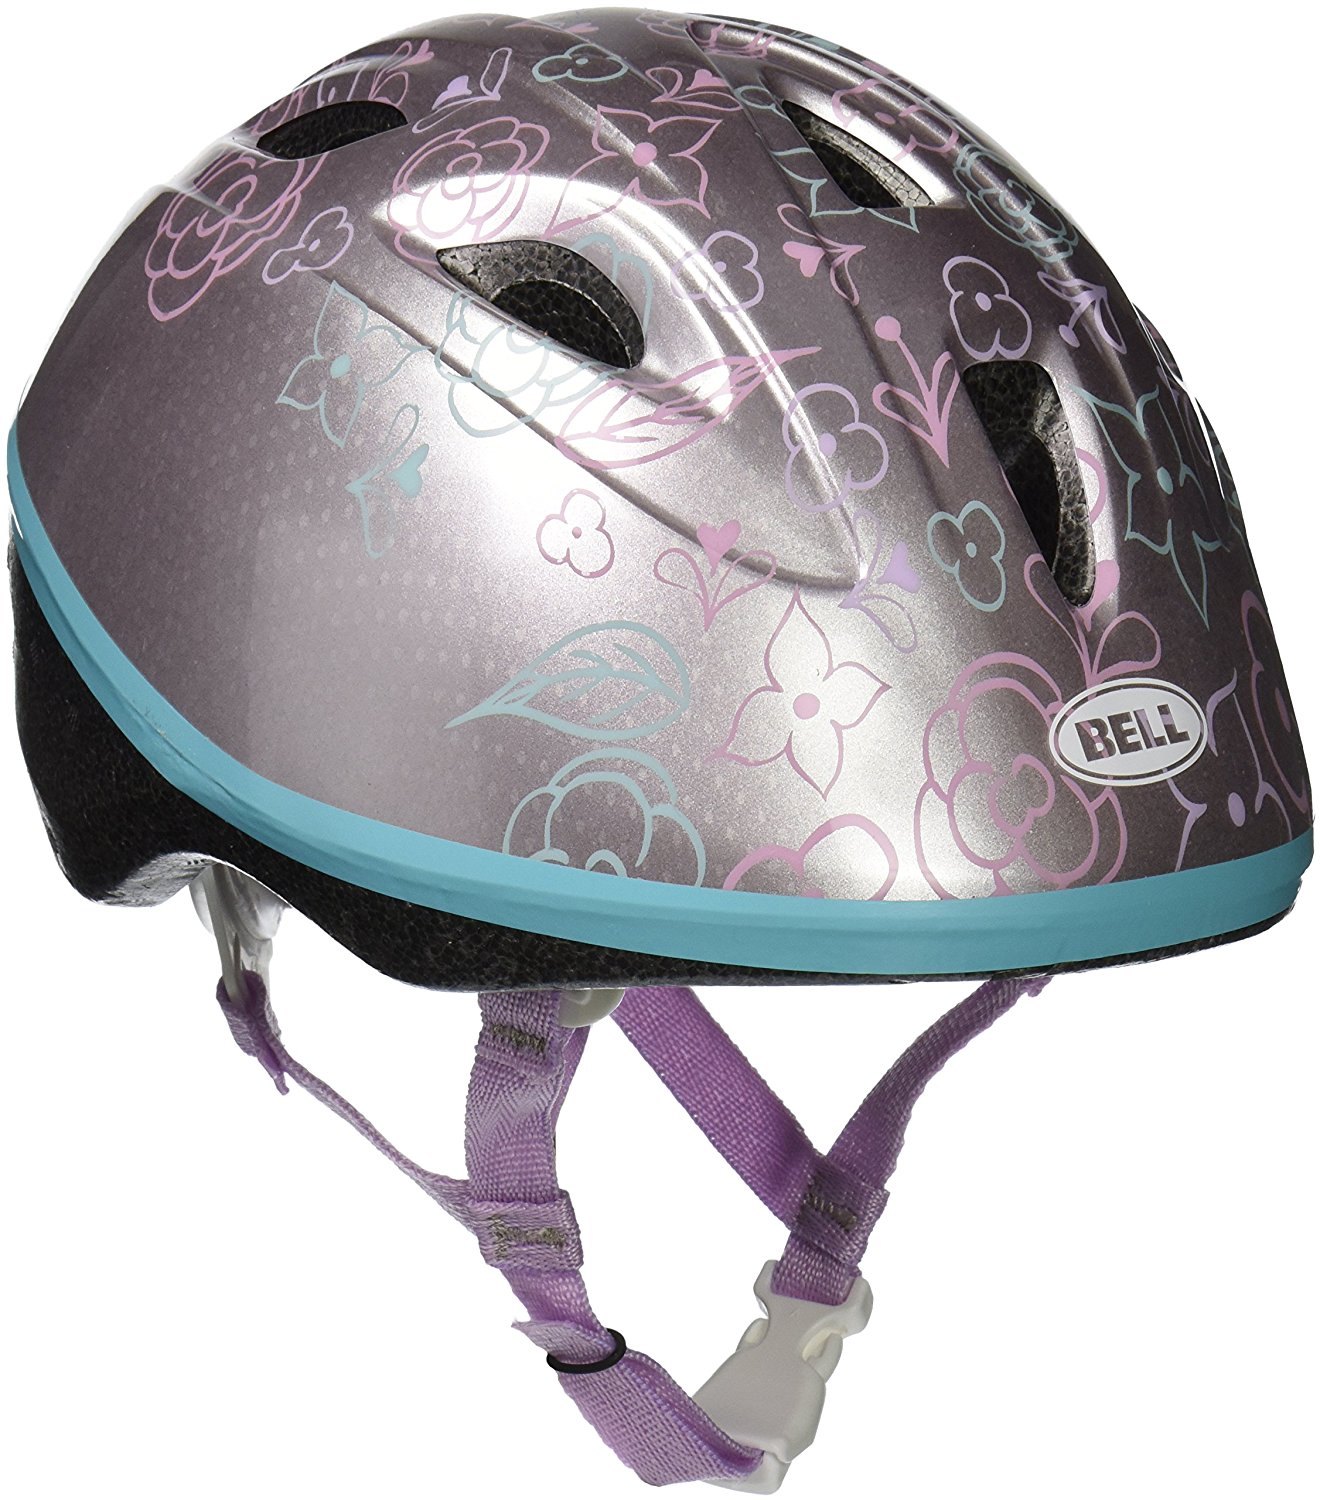 Infant Bike Helmet